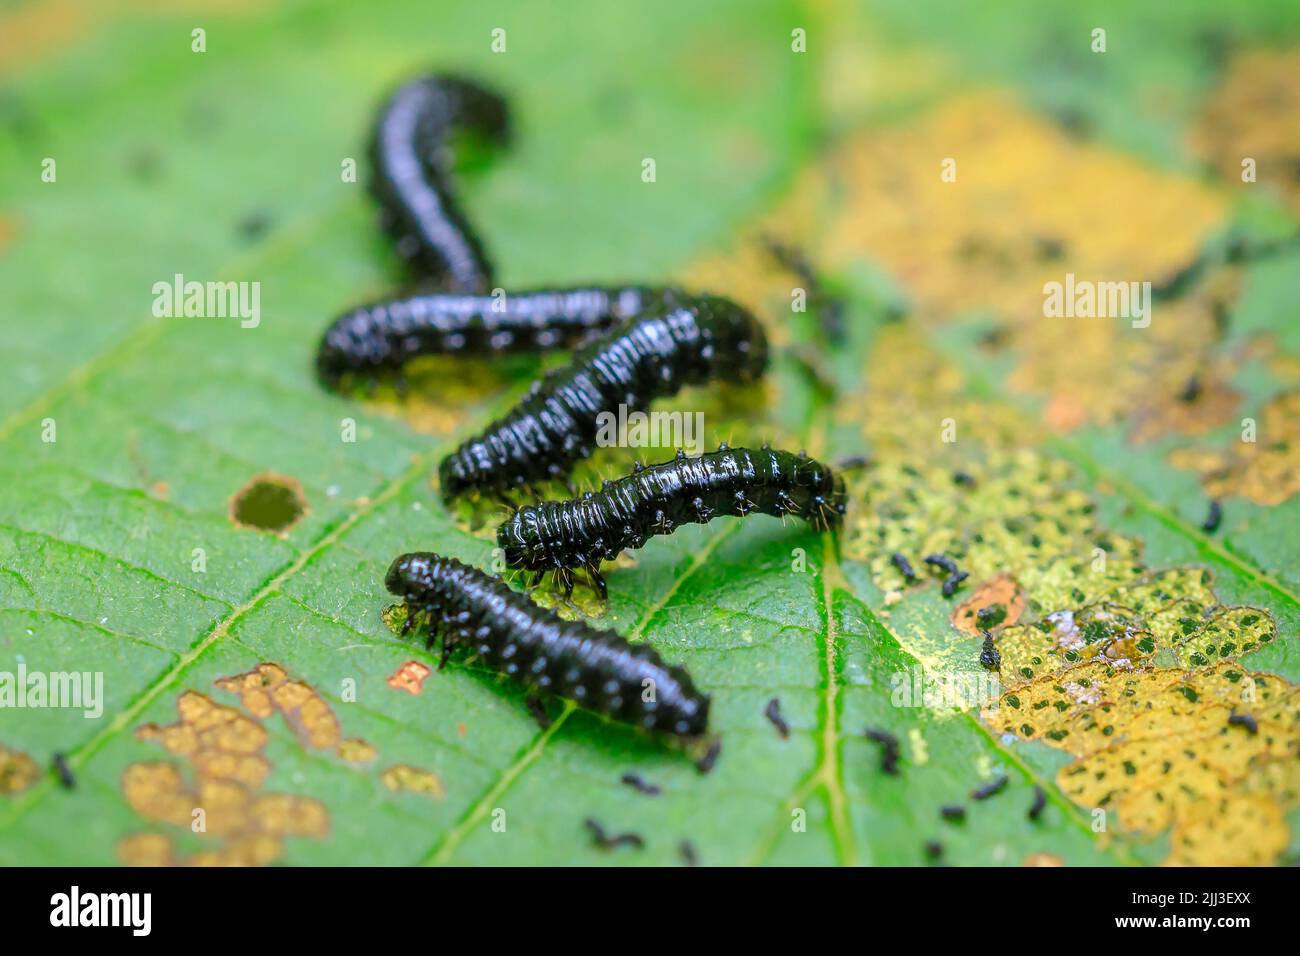 Primer plano de un pequeño escarabajo de hoja de aliso, agelastica alni, oruga trepando sobre hierba verde y cañas en un día de verano. Foto de stock